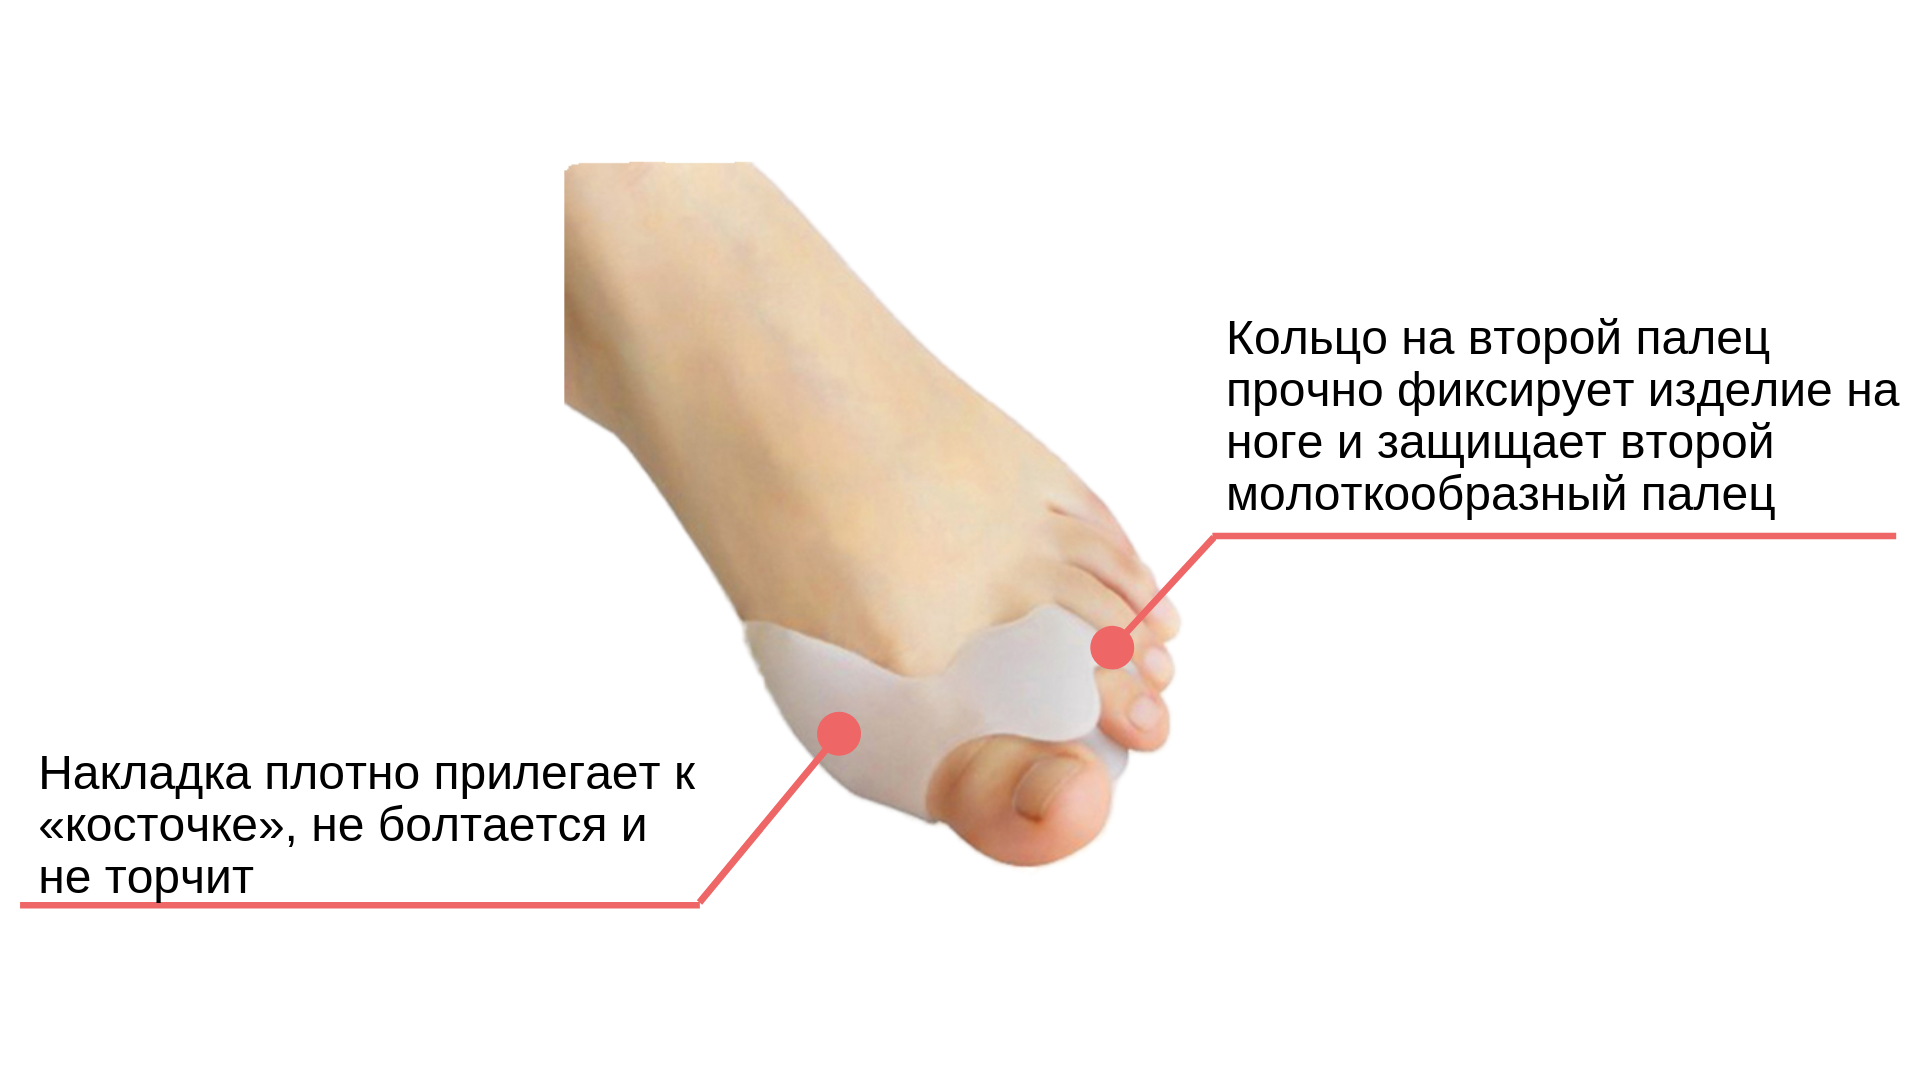 Ортопедические стельки от косточки на большом пальце ноги